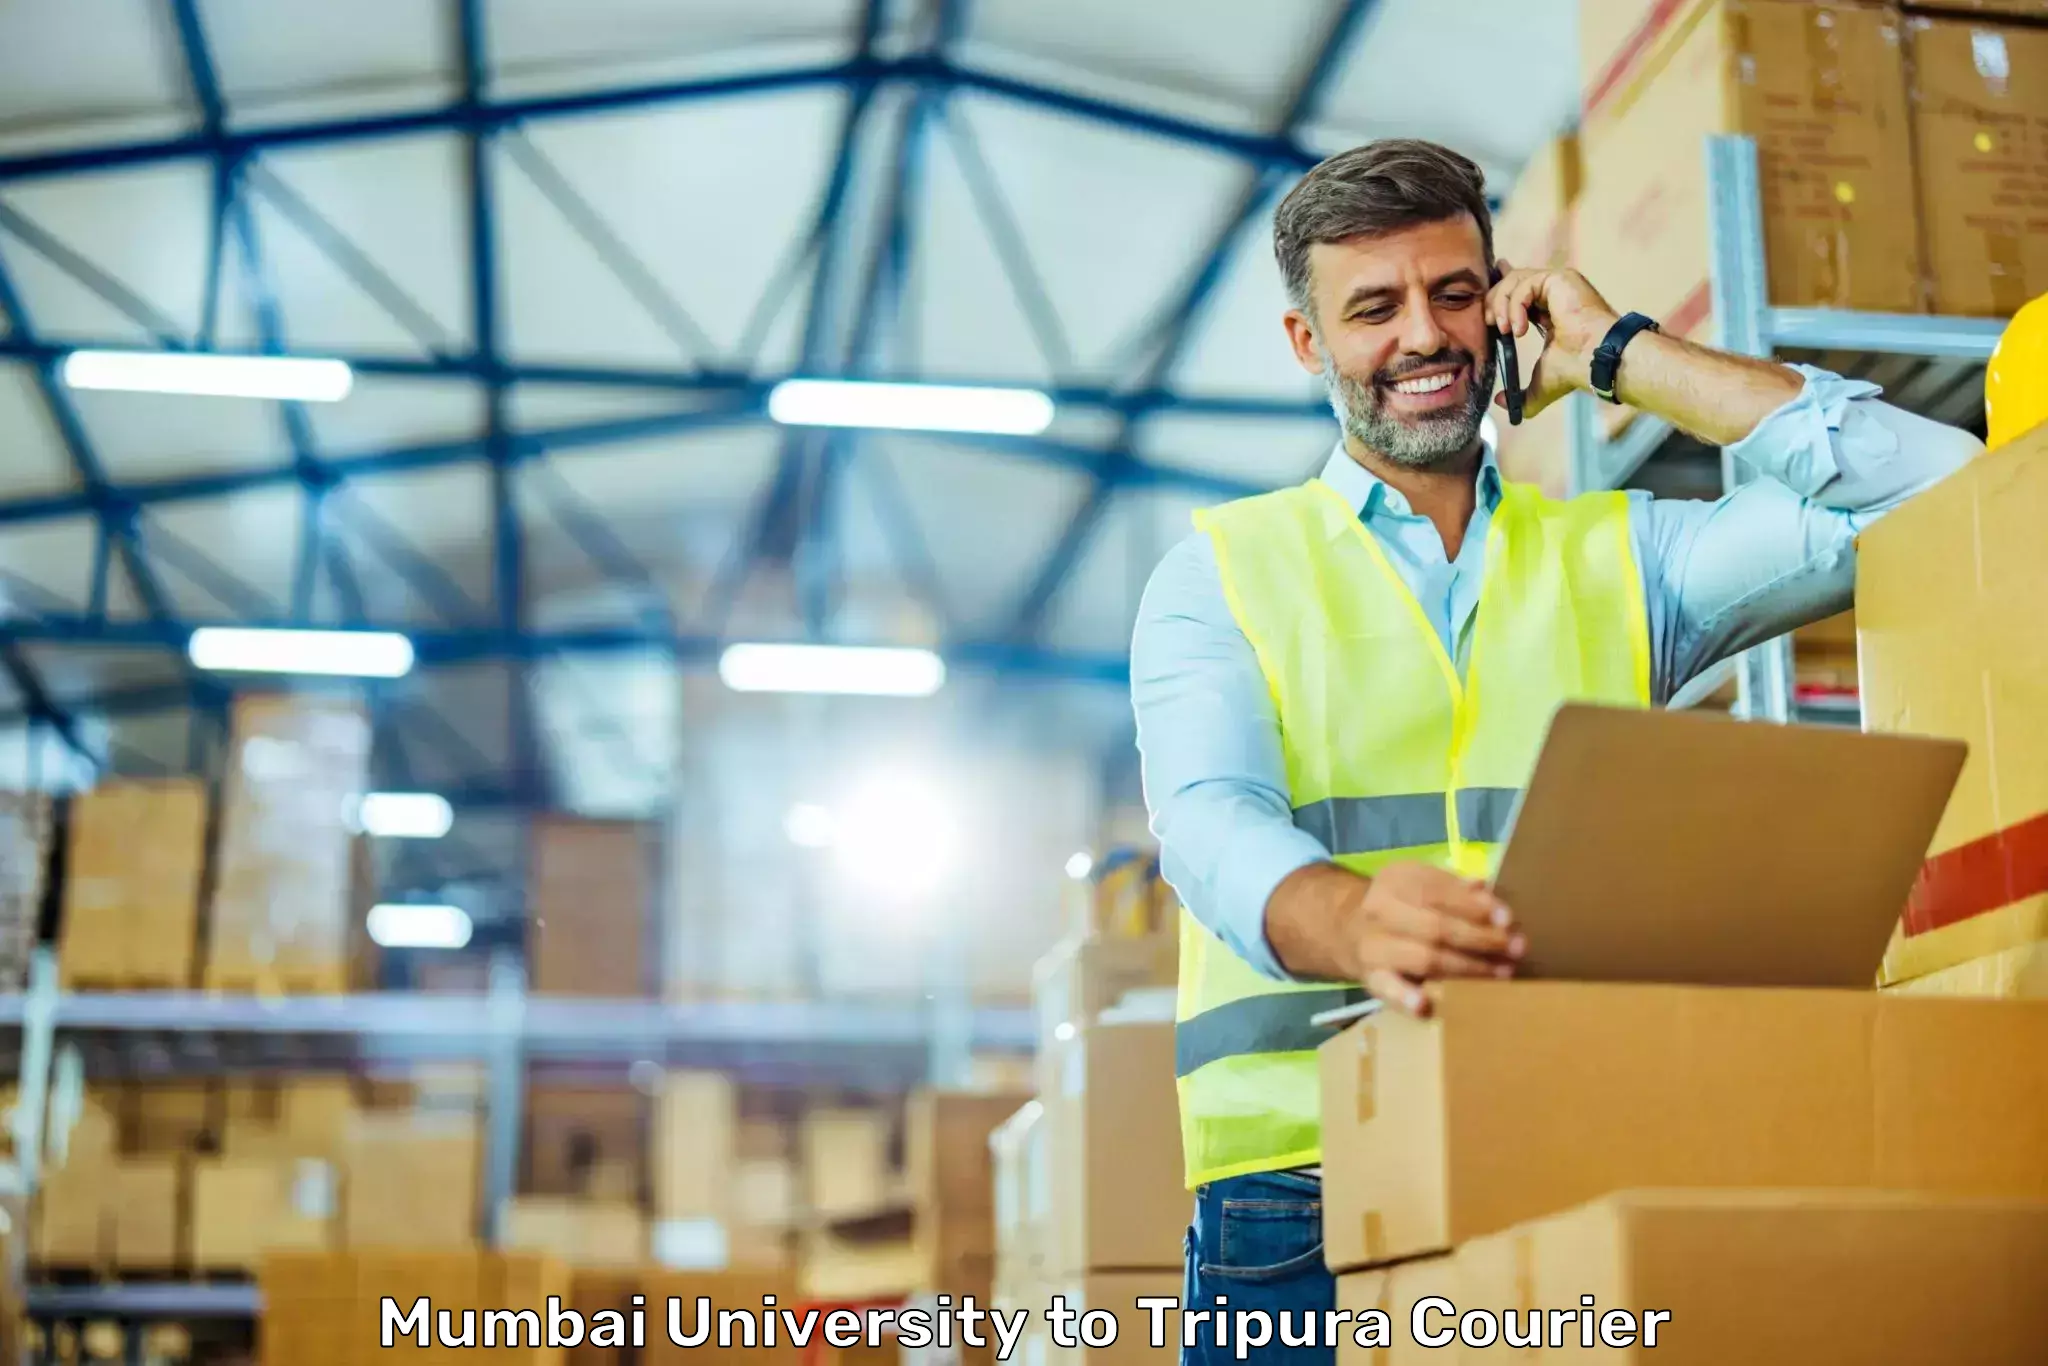 Large package courier Mumbai University to Kailashahar